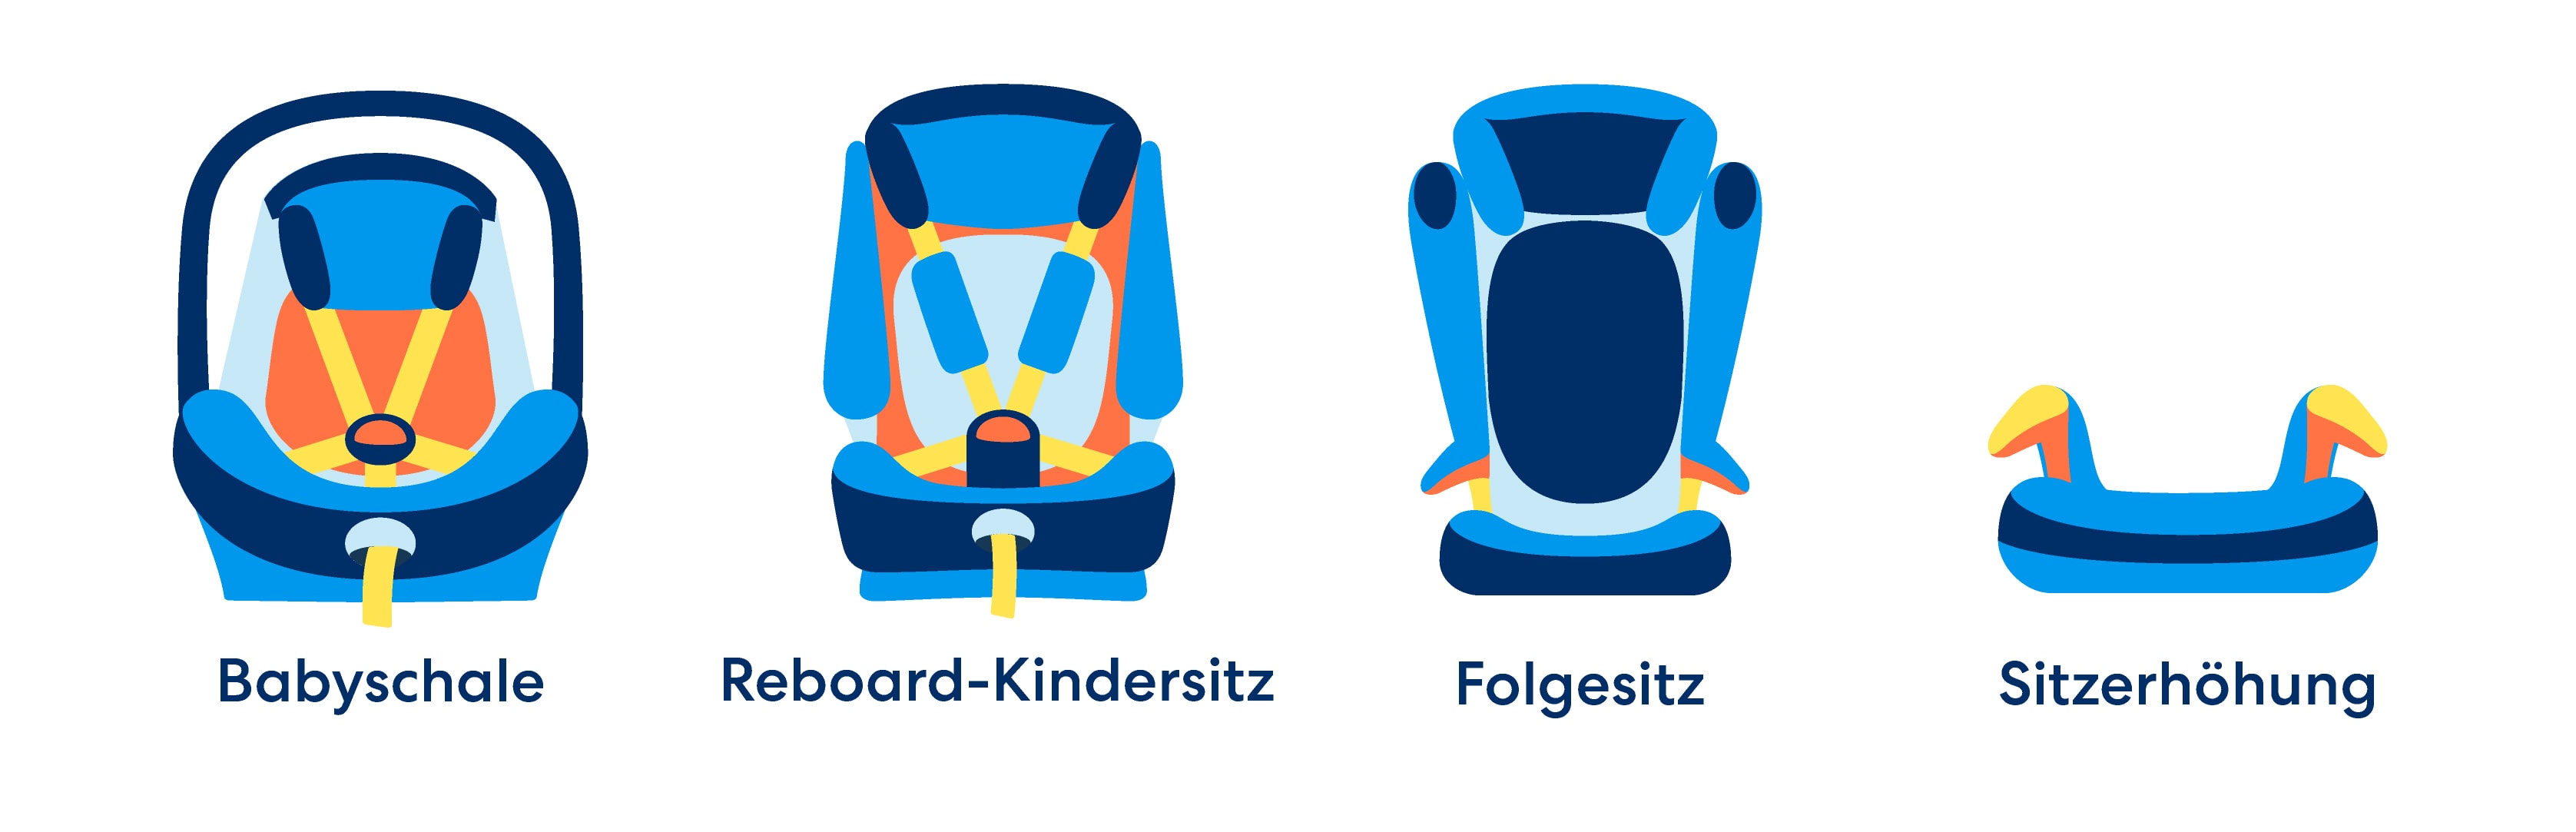 Die verschiedenen Formen der Kindersitze.